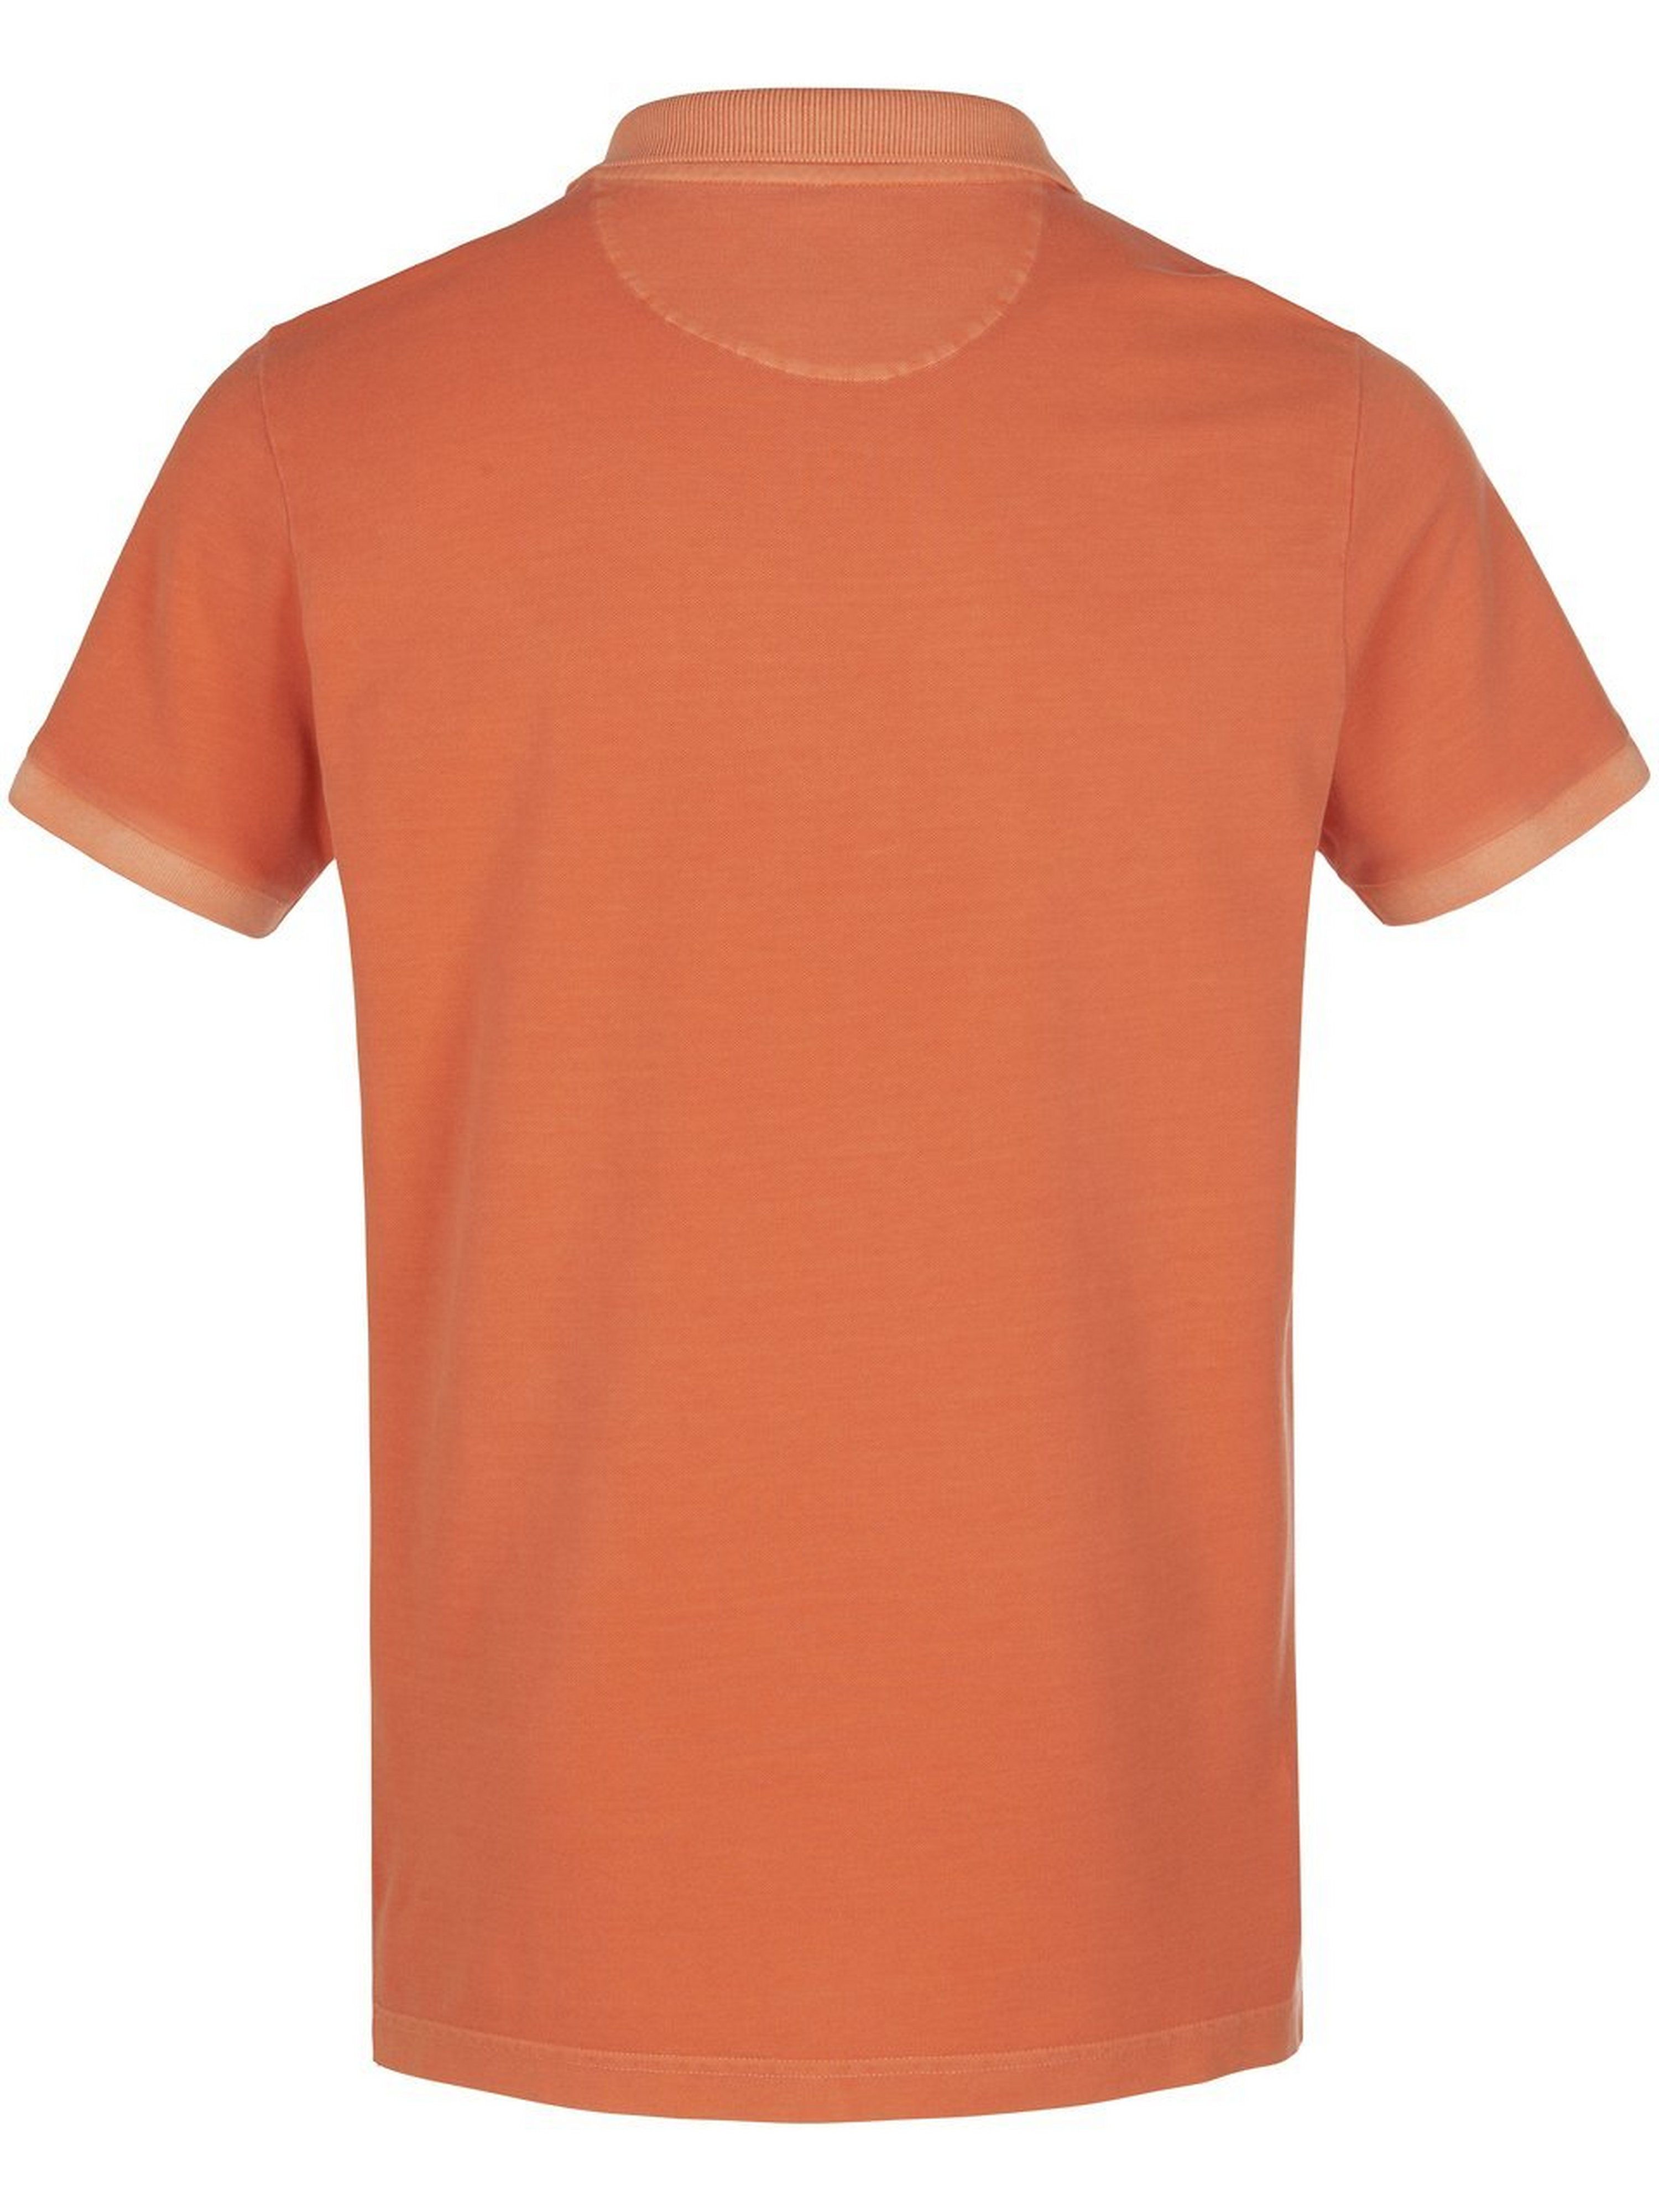 Poloshirt Fra GANT orange